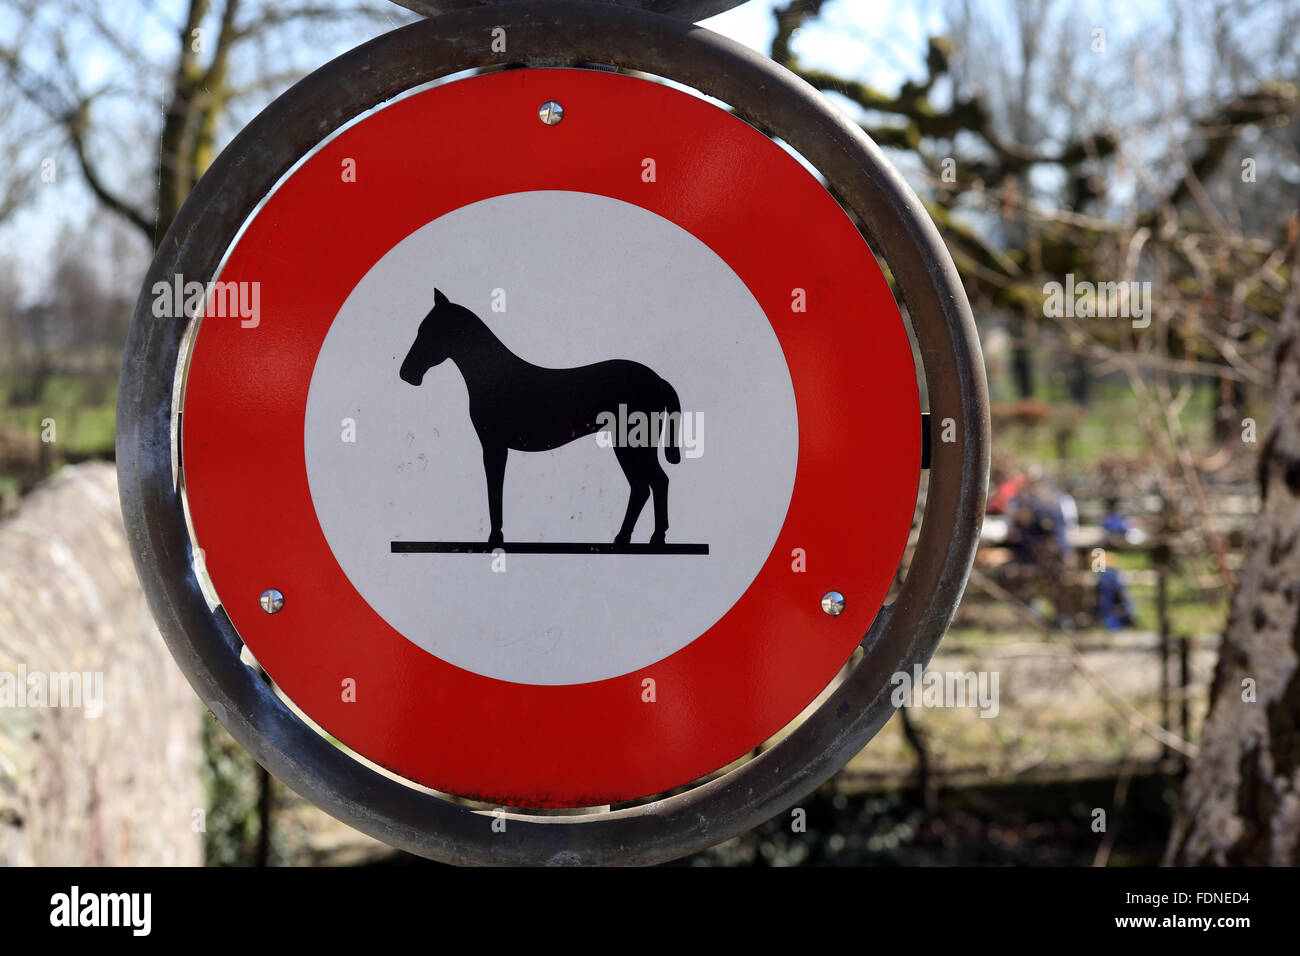 Zuerich, Suisse l'interdiction des signes pour les chevaux Banque D'Images